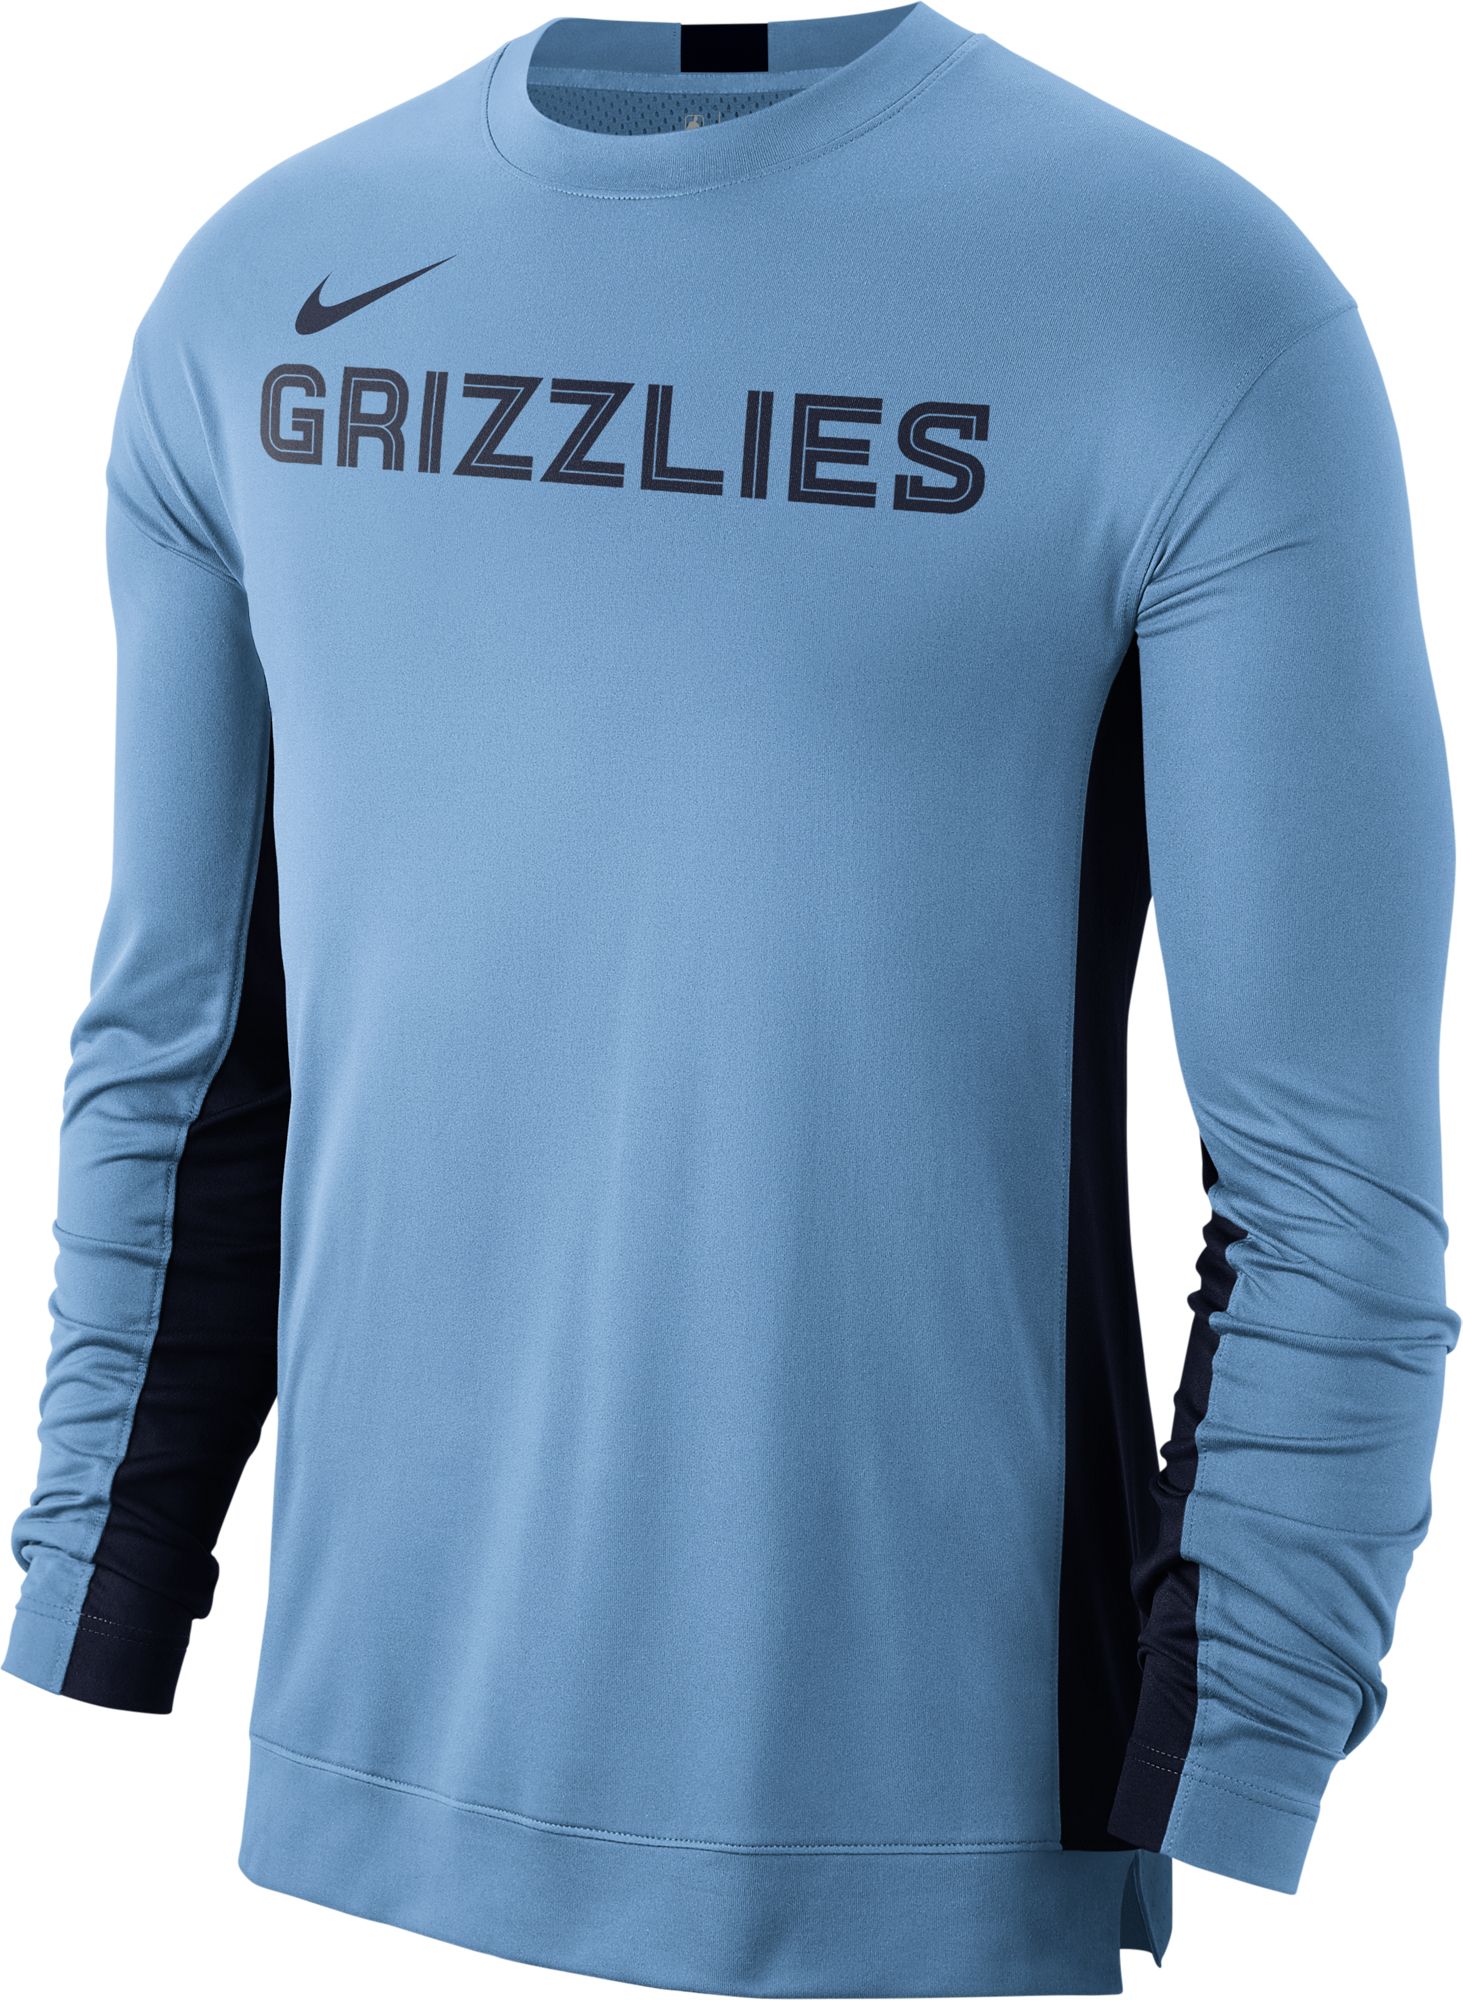 memphis grizzlies dri fit shirt